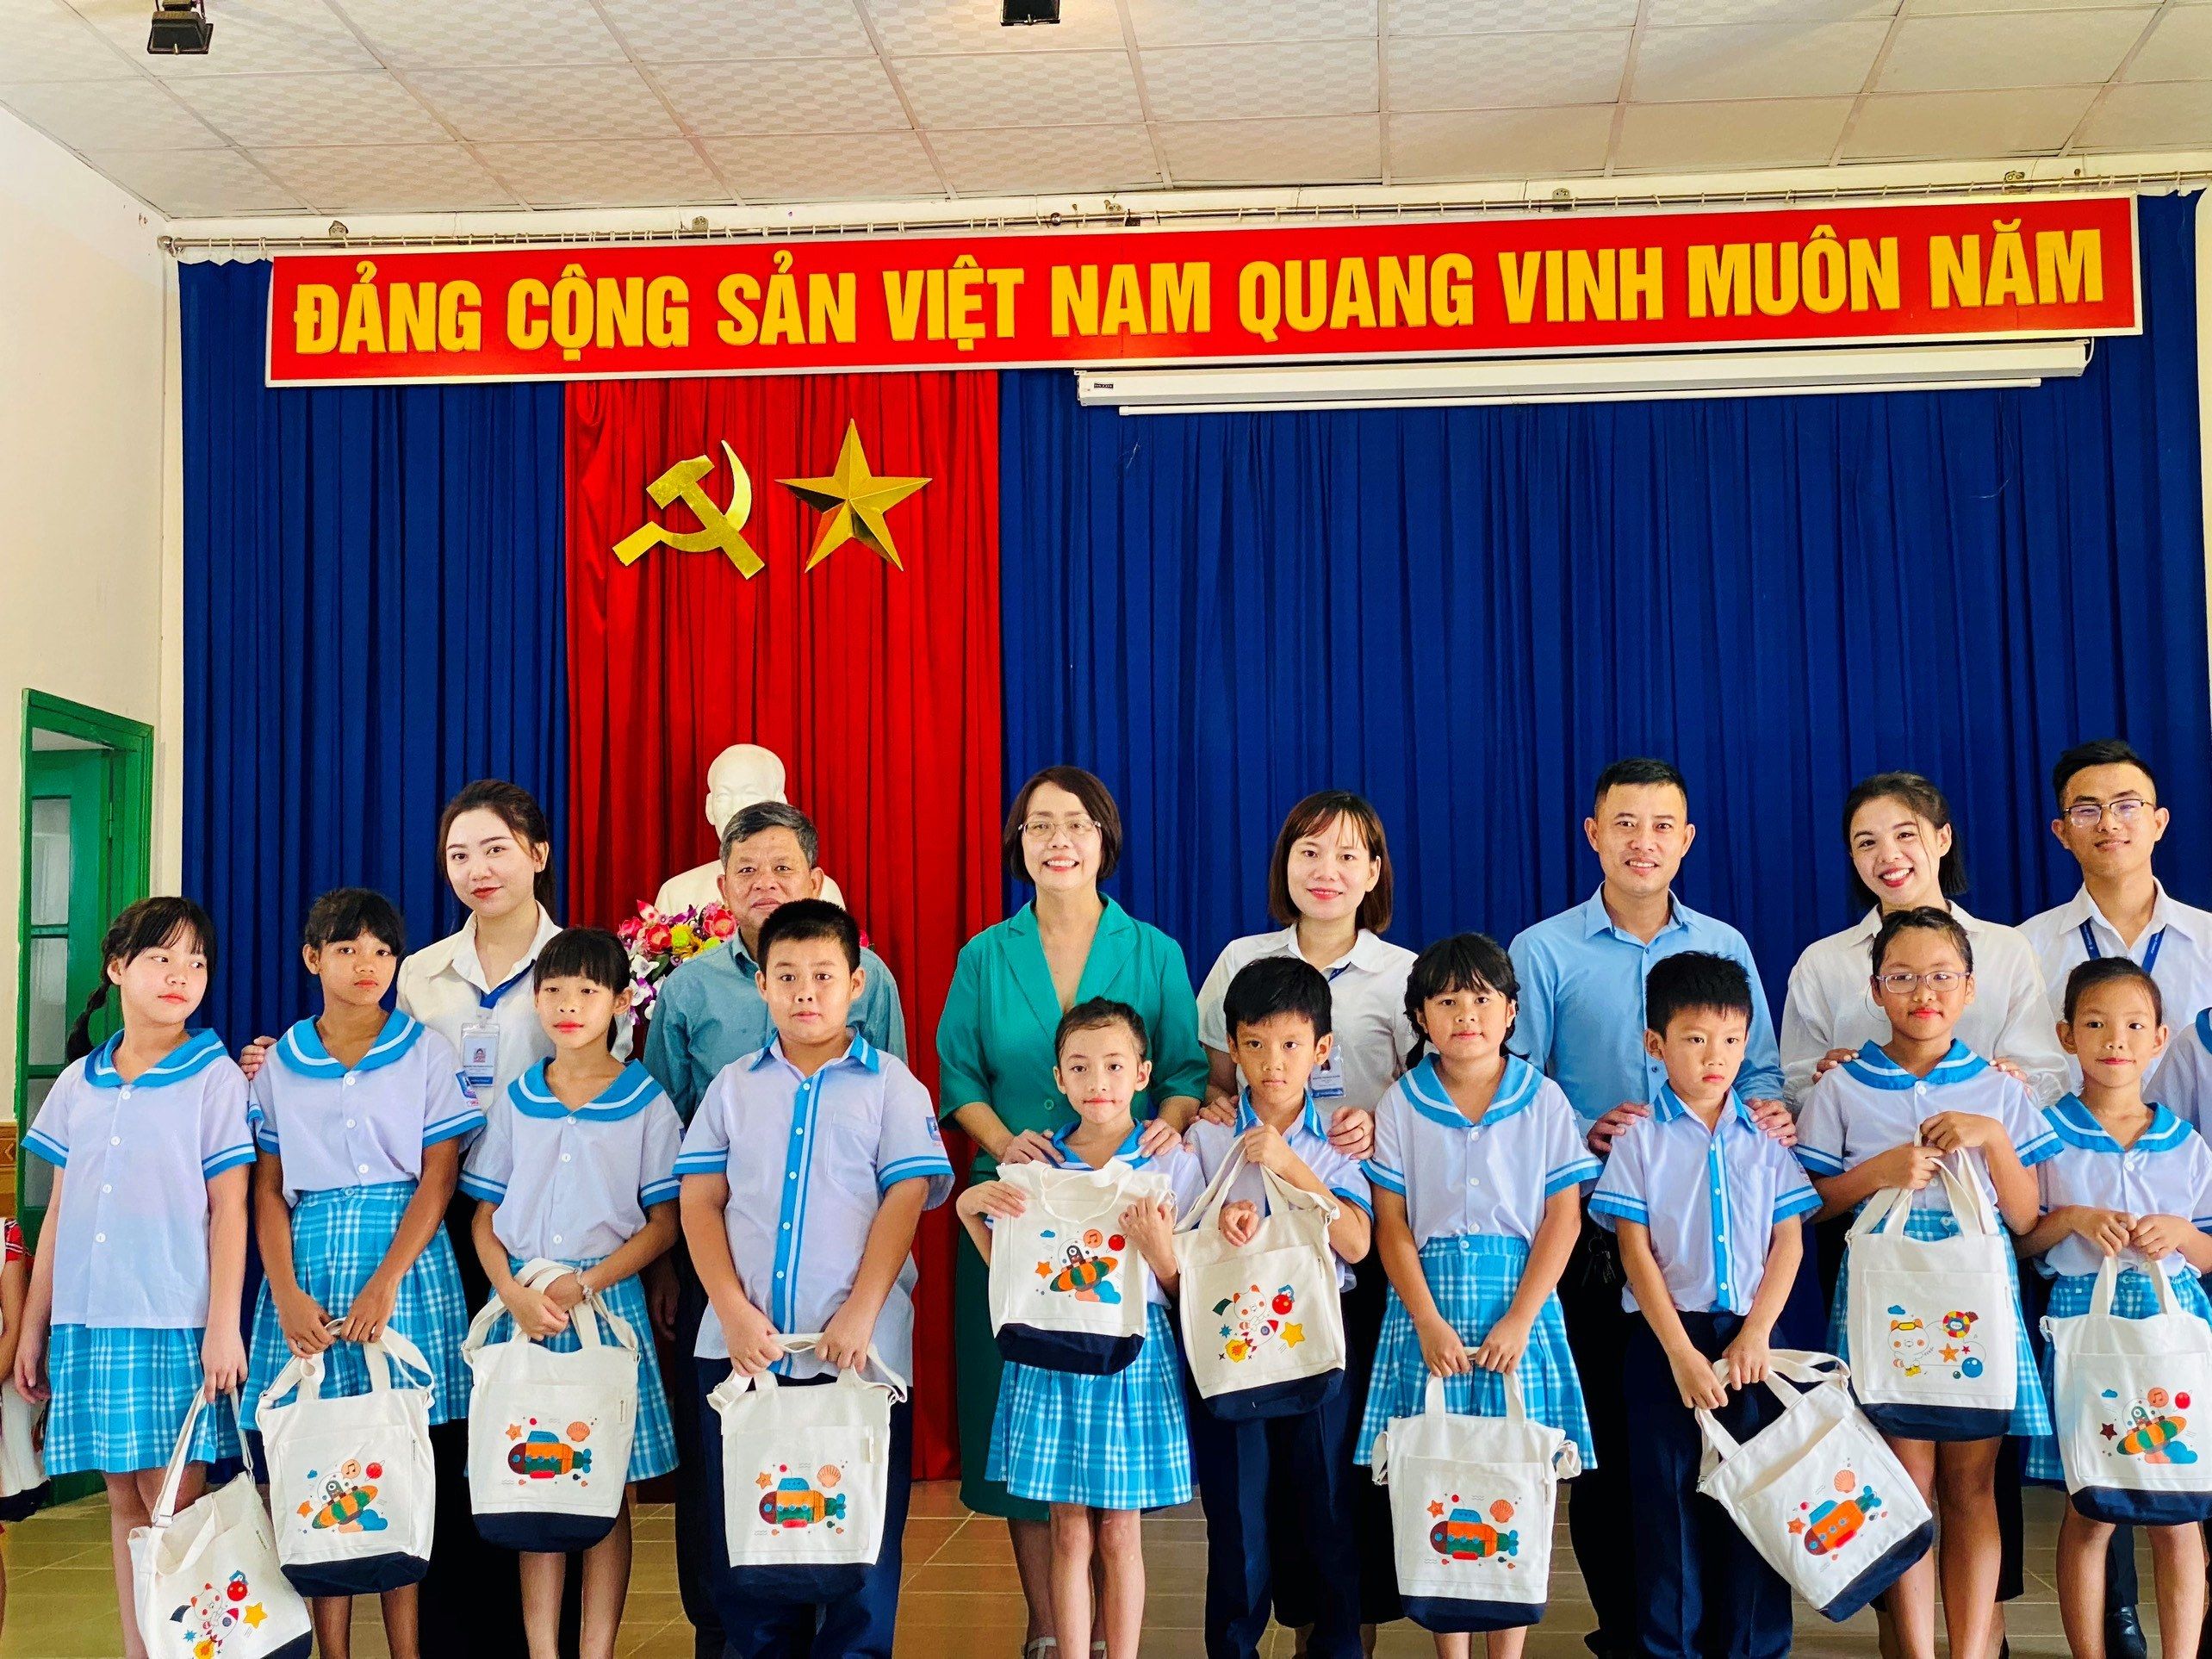 Representative of Shinhan Finance, Representative of SOS Village Nha Trang taking souvenir photos with the children